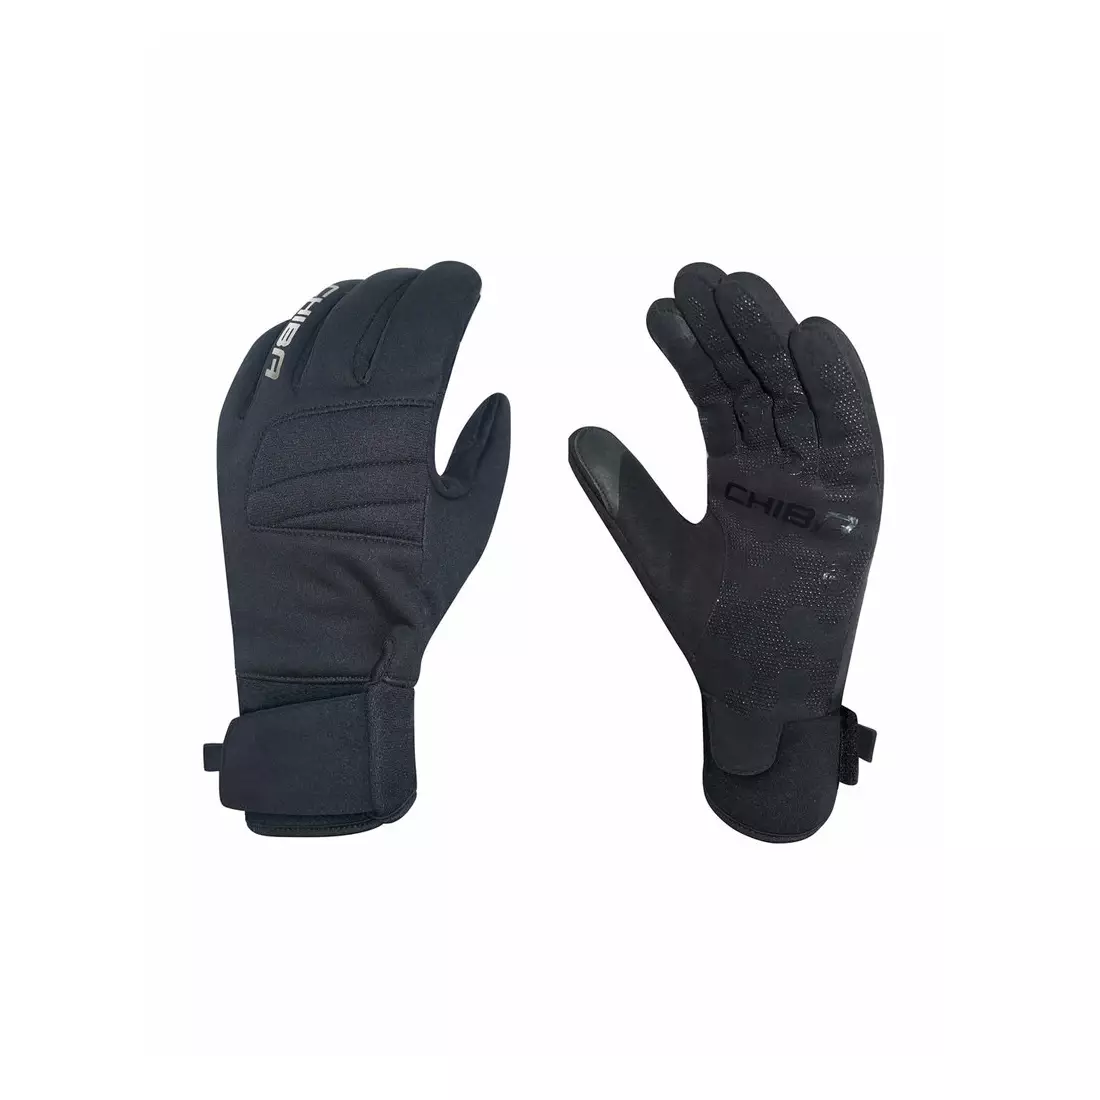 CHIBA CLASSIC warm winter bicycle gloves, schwarz und silber